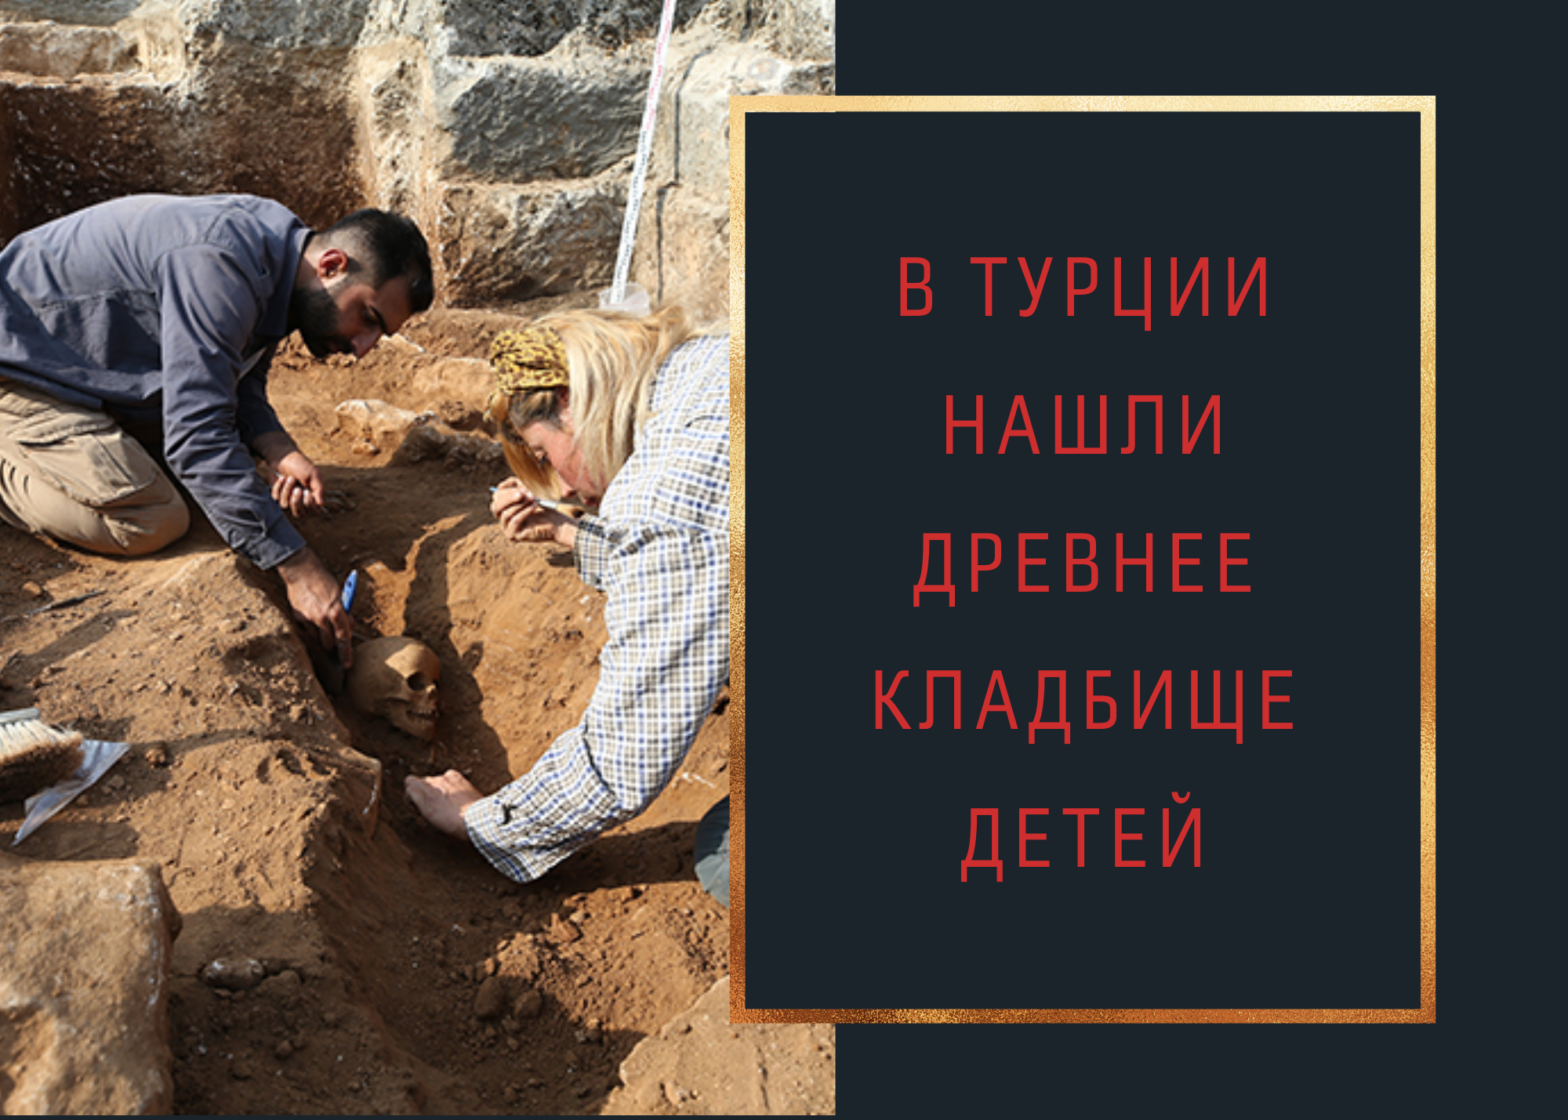 В Турции нашли древнее кладбище детей